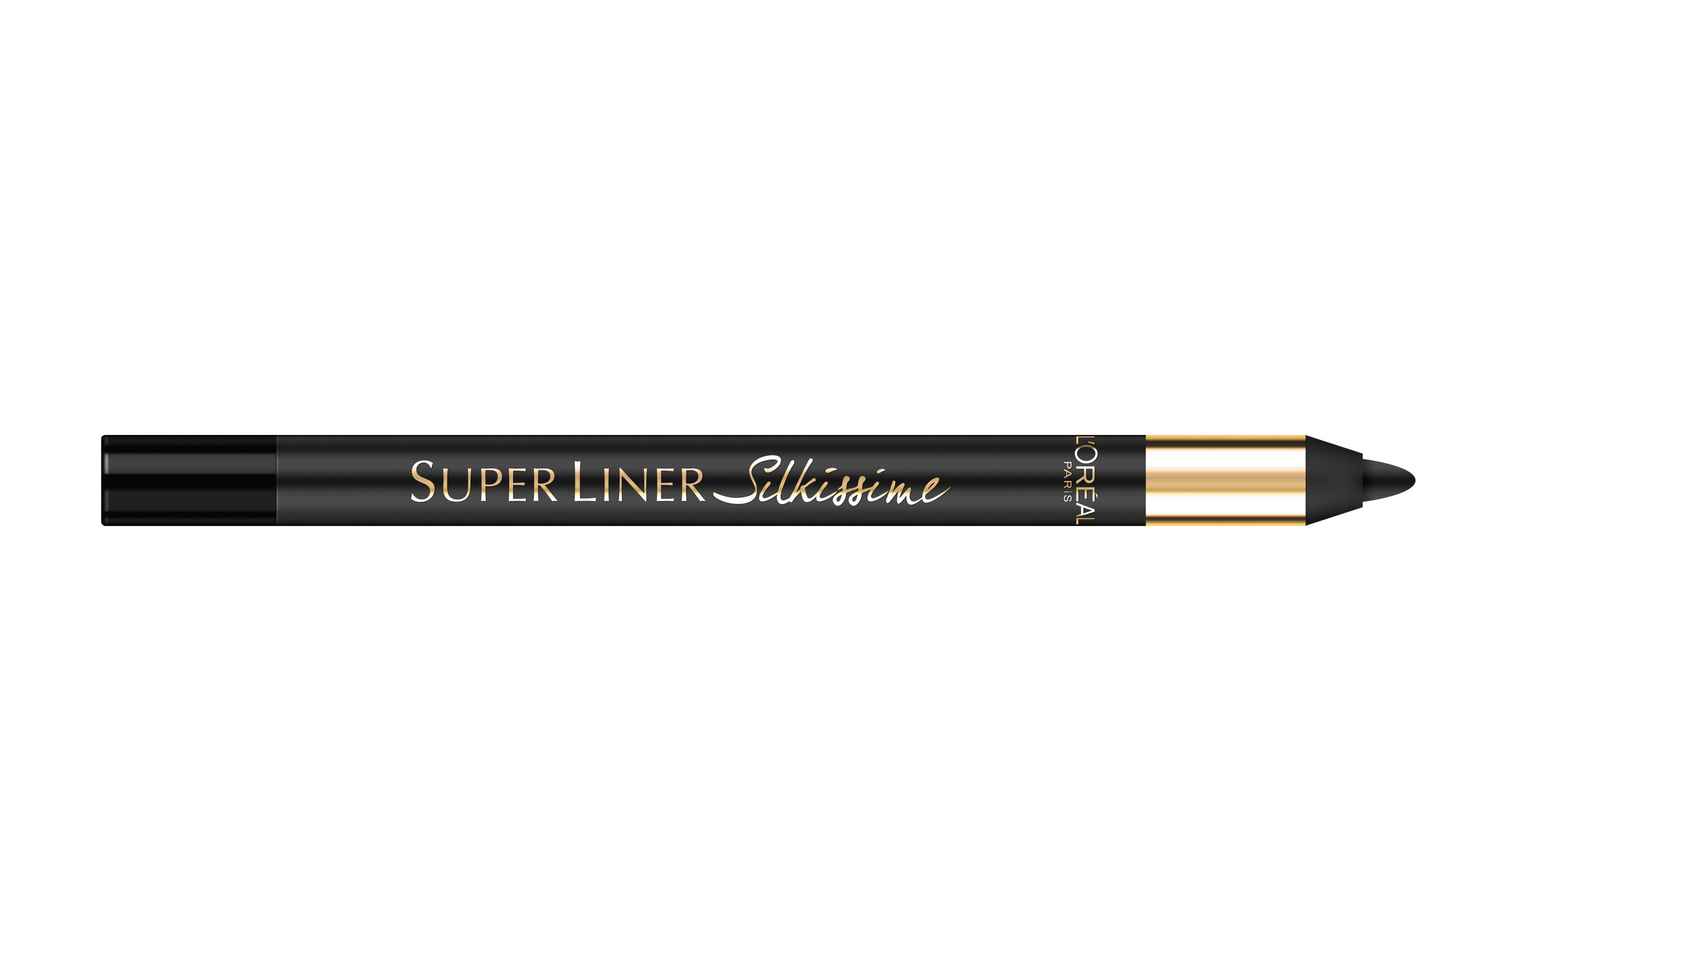 Super Liner Silkissime de L’Orèal.